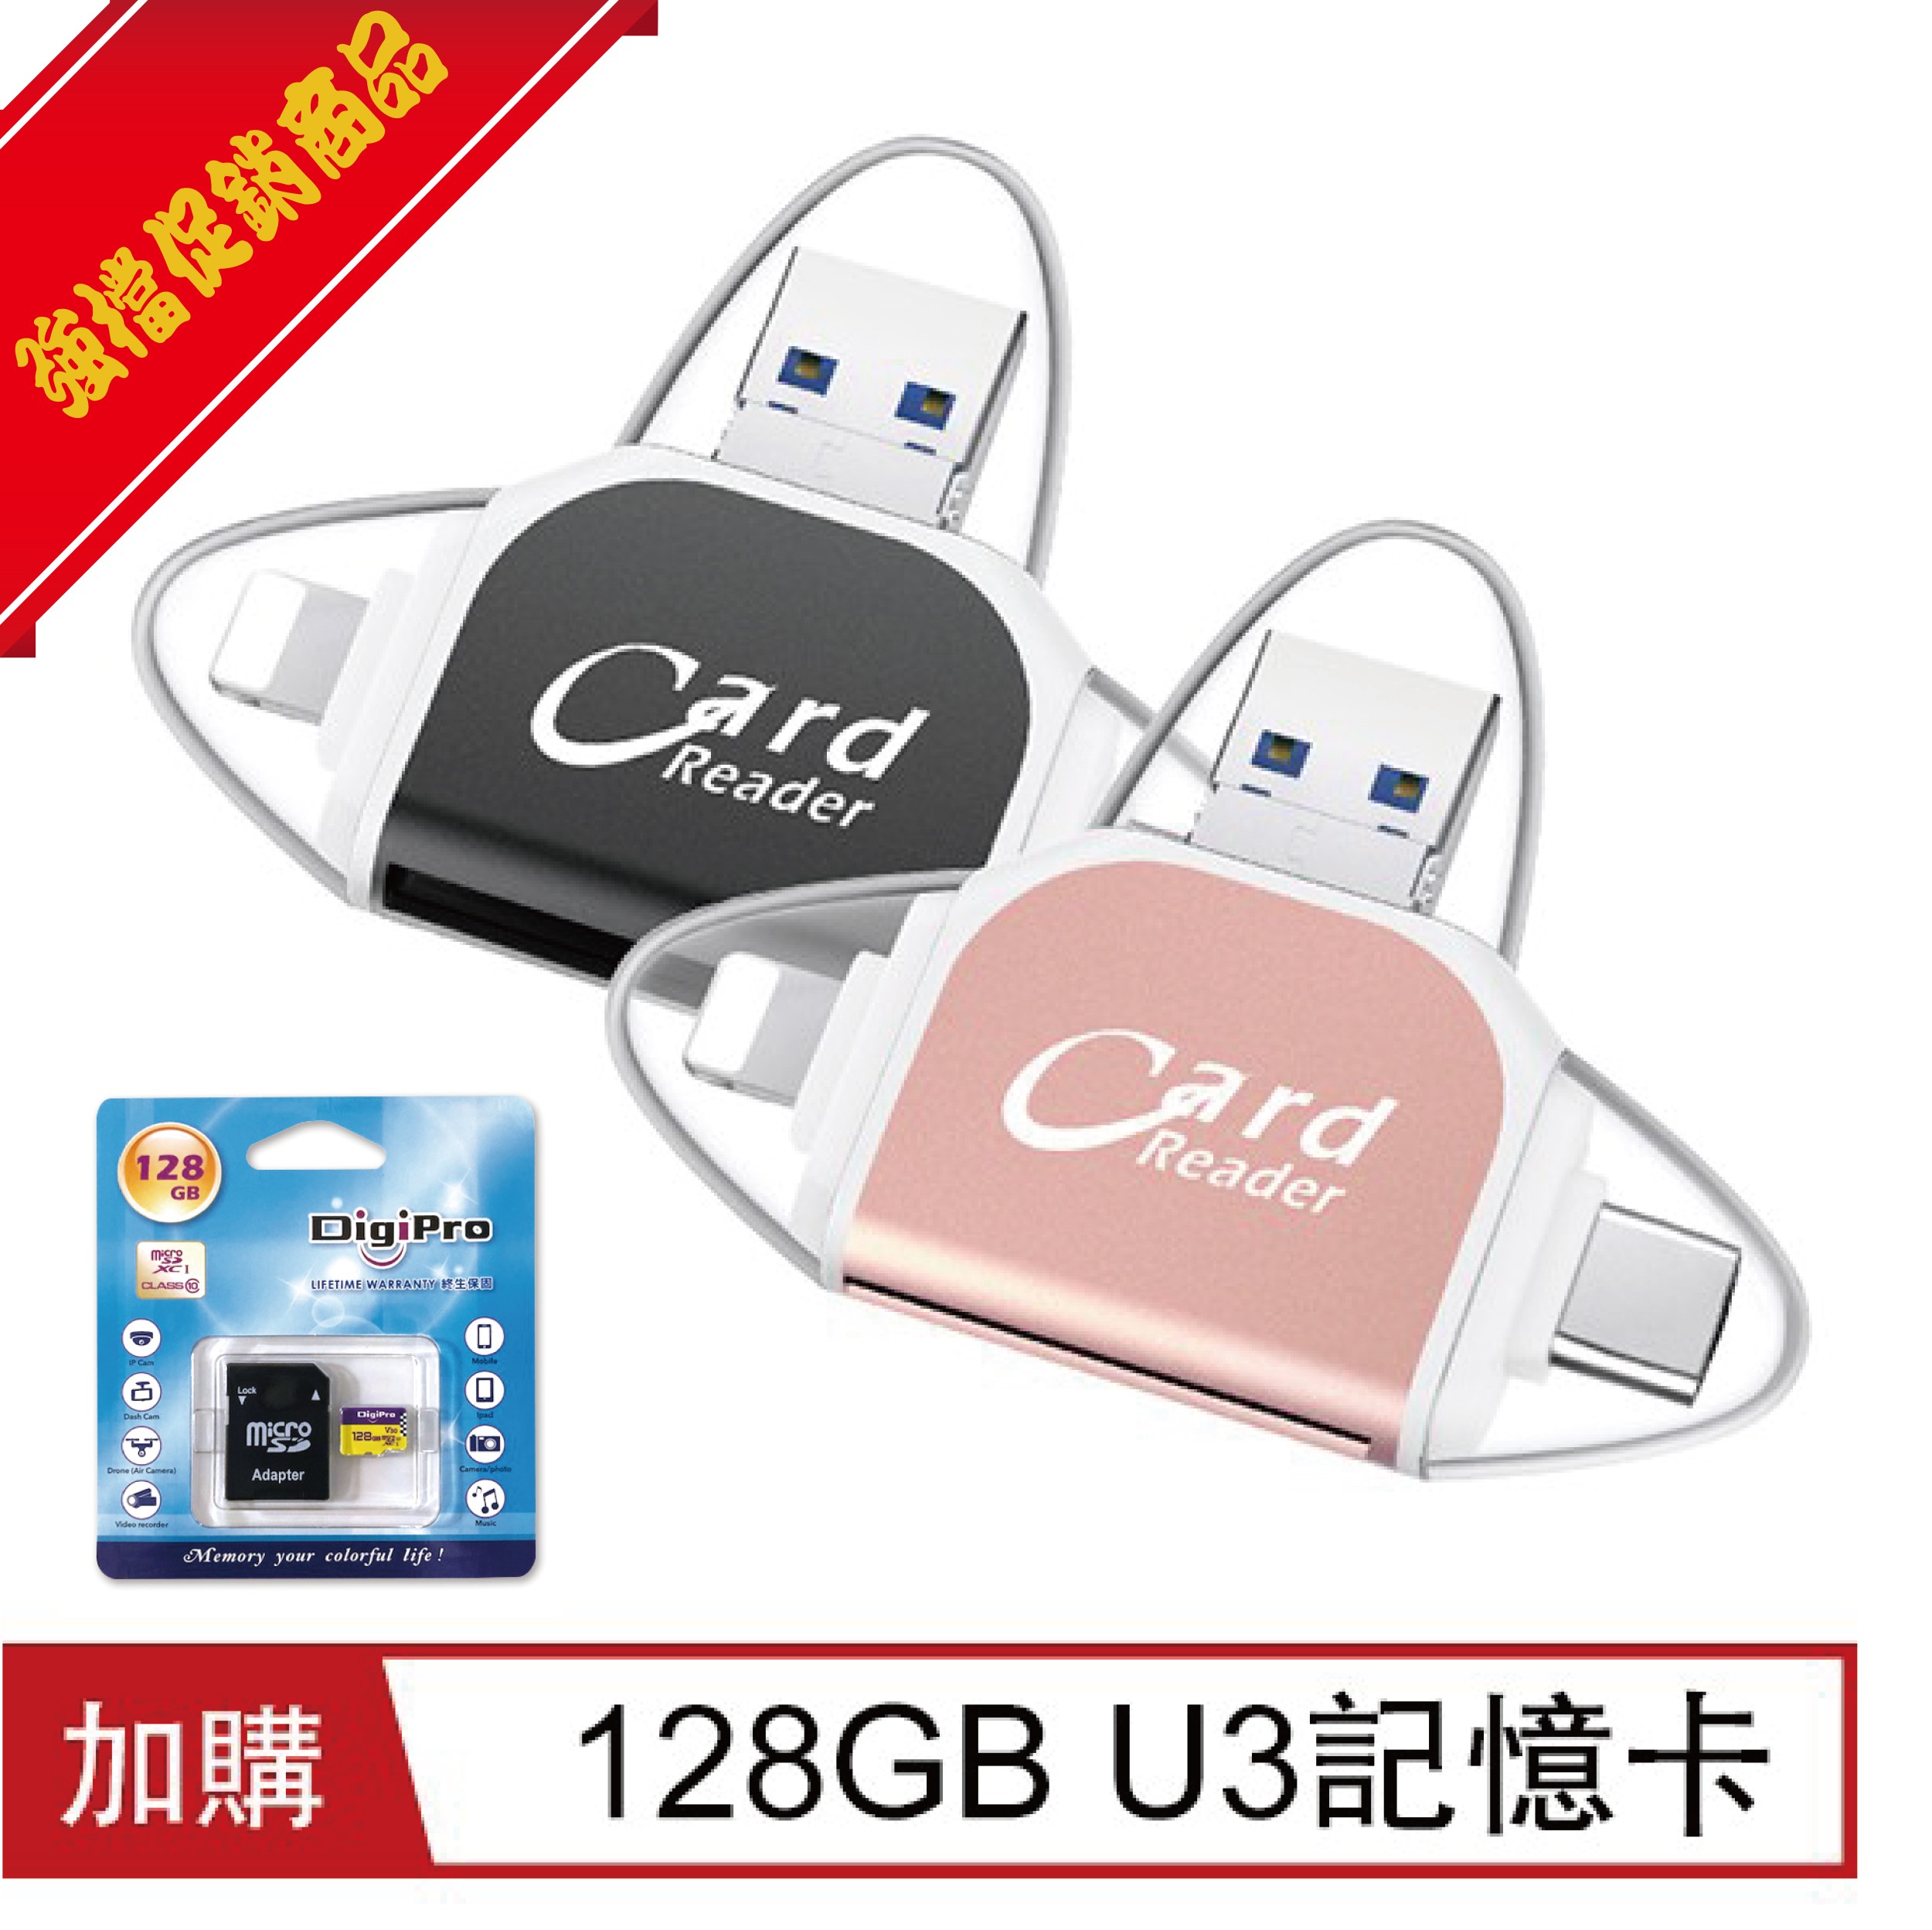 四合一多功能OTG/USB讀卡器 (加購128GB記憶卡)